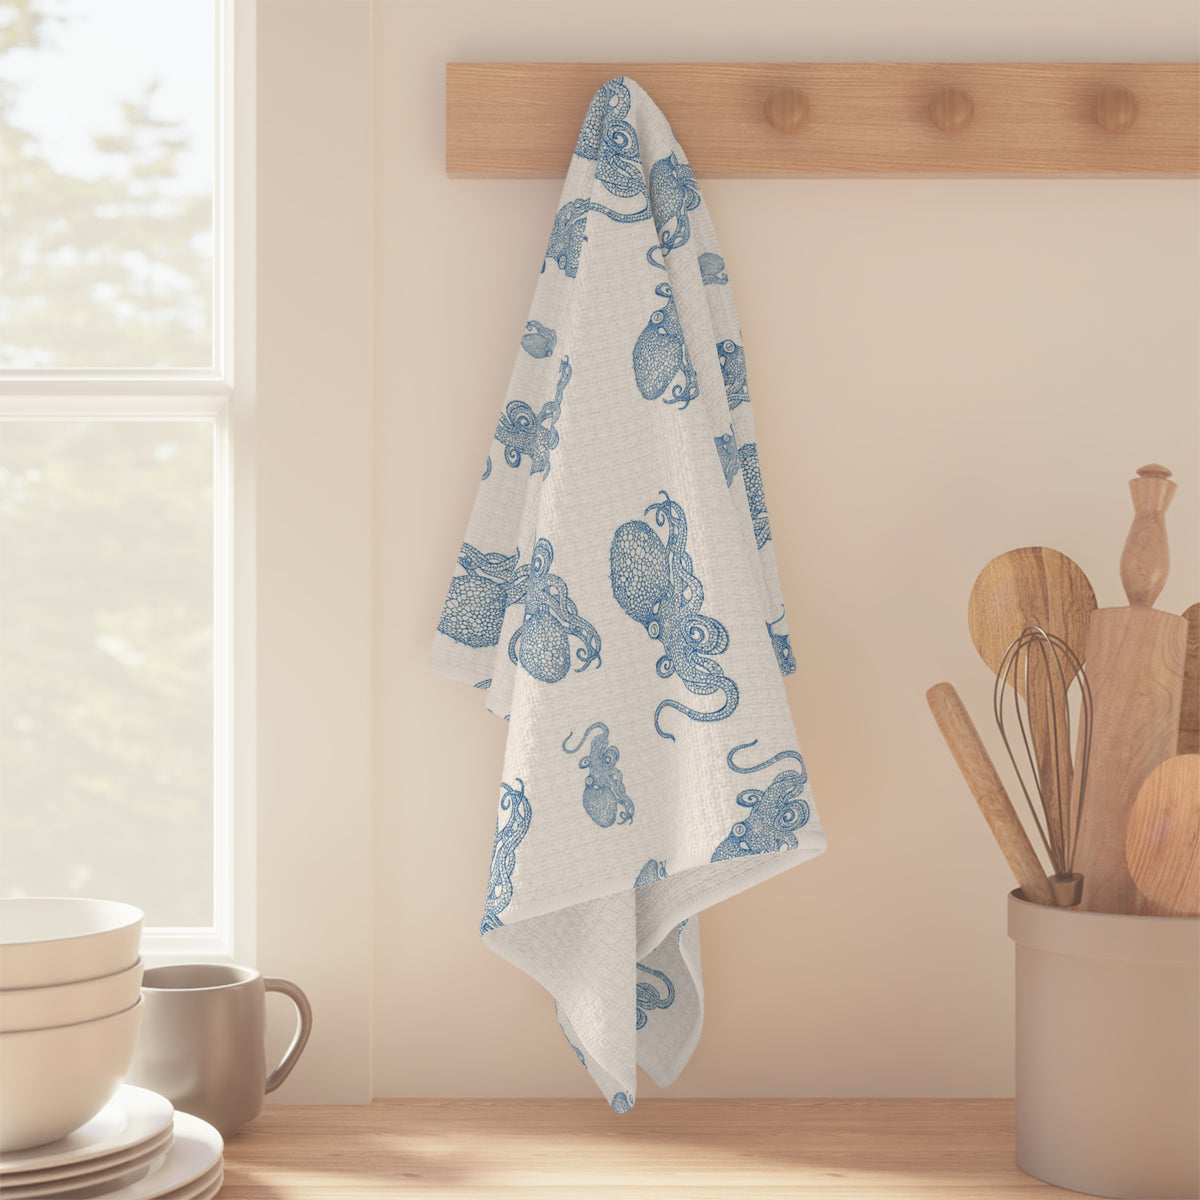 Blue Octopus I Soft Kitchen Towel - Best Seller